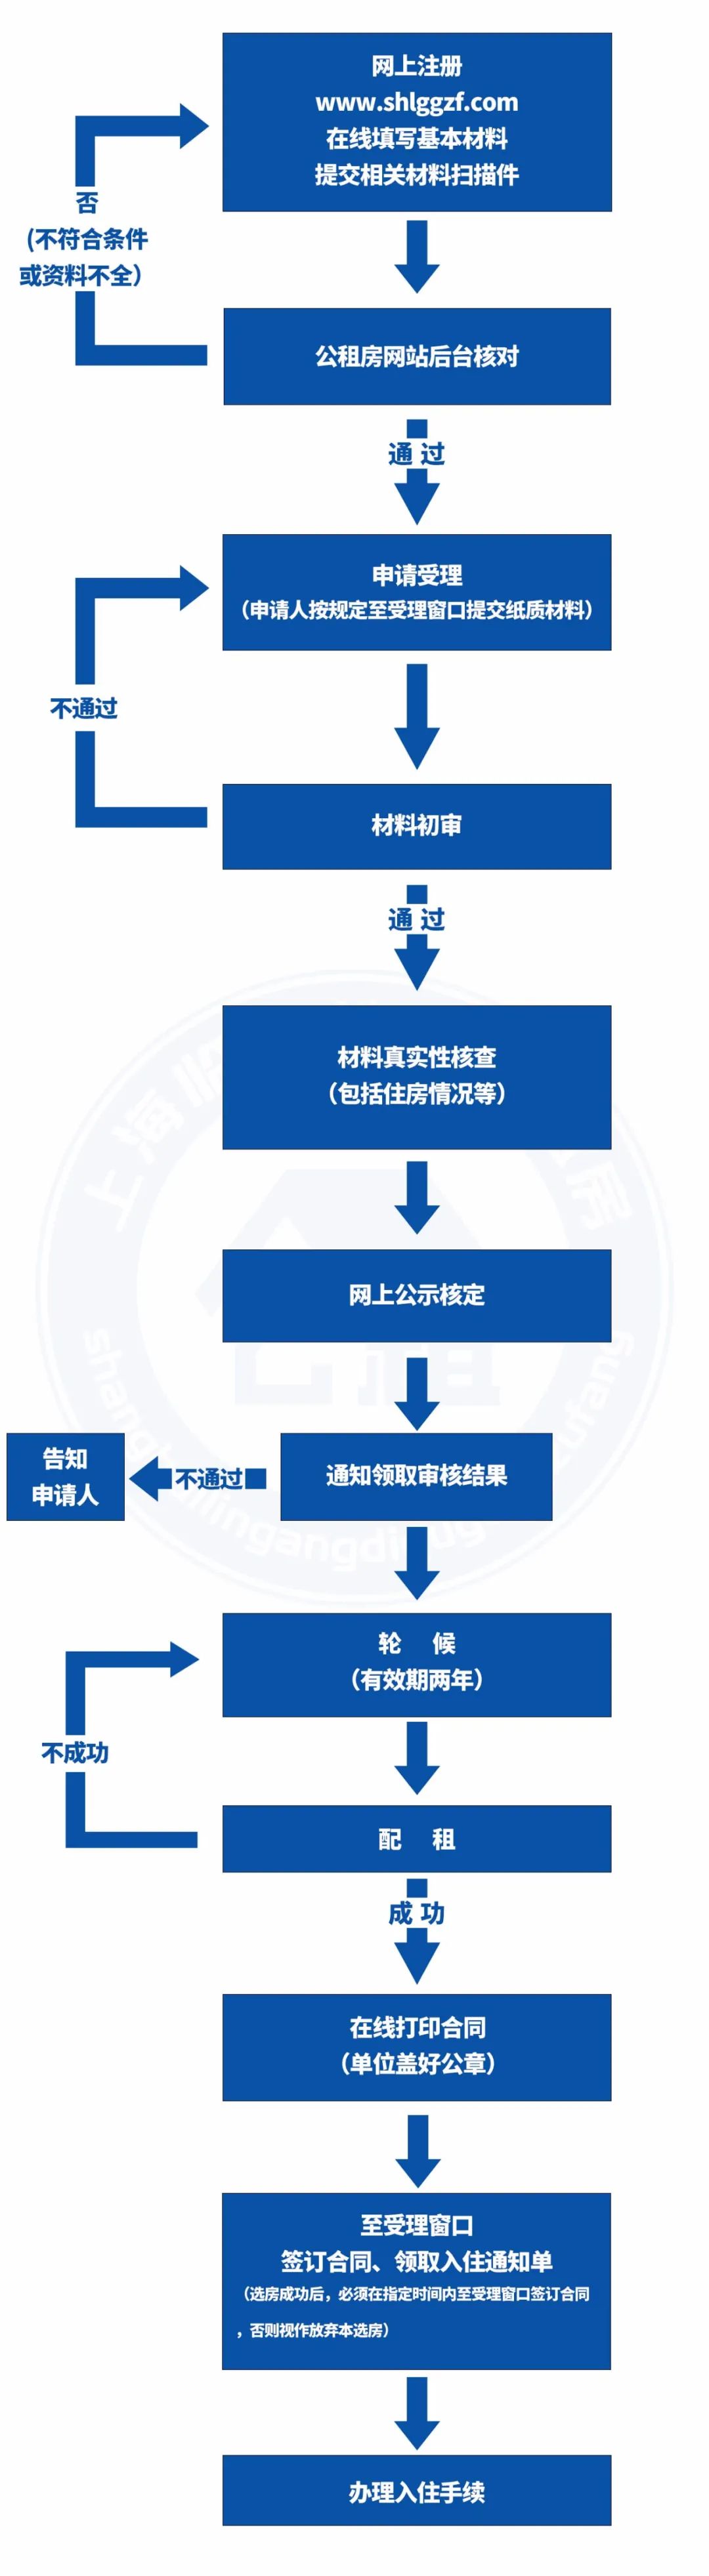 没有上海居住证也有机会申请！最低640元/月！上海新一批公租房房源来了！